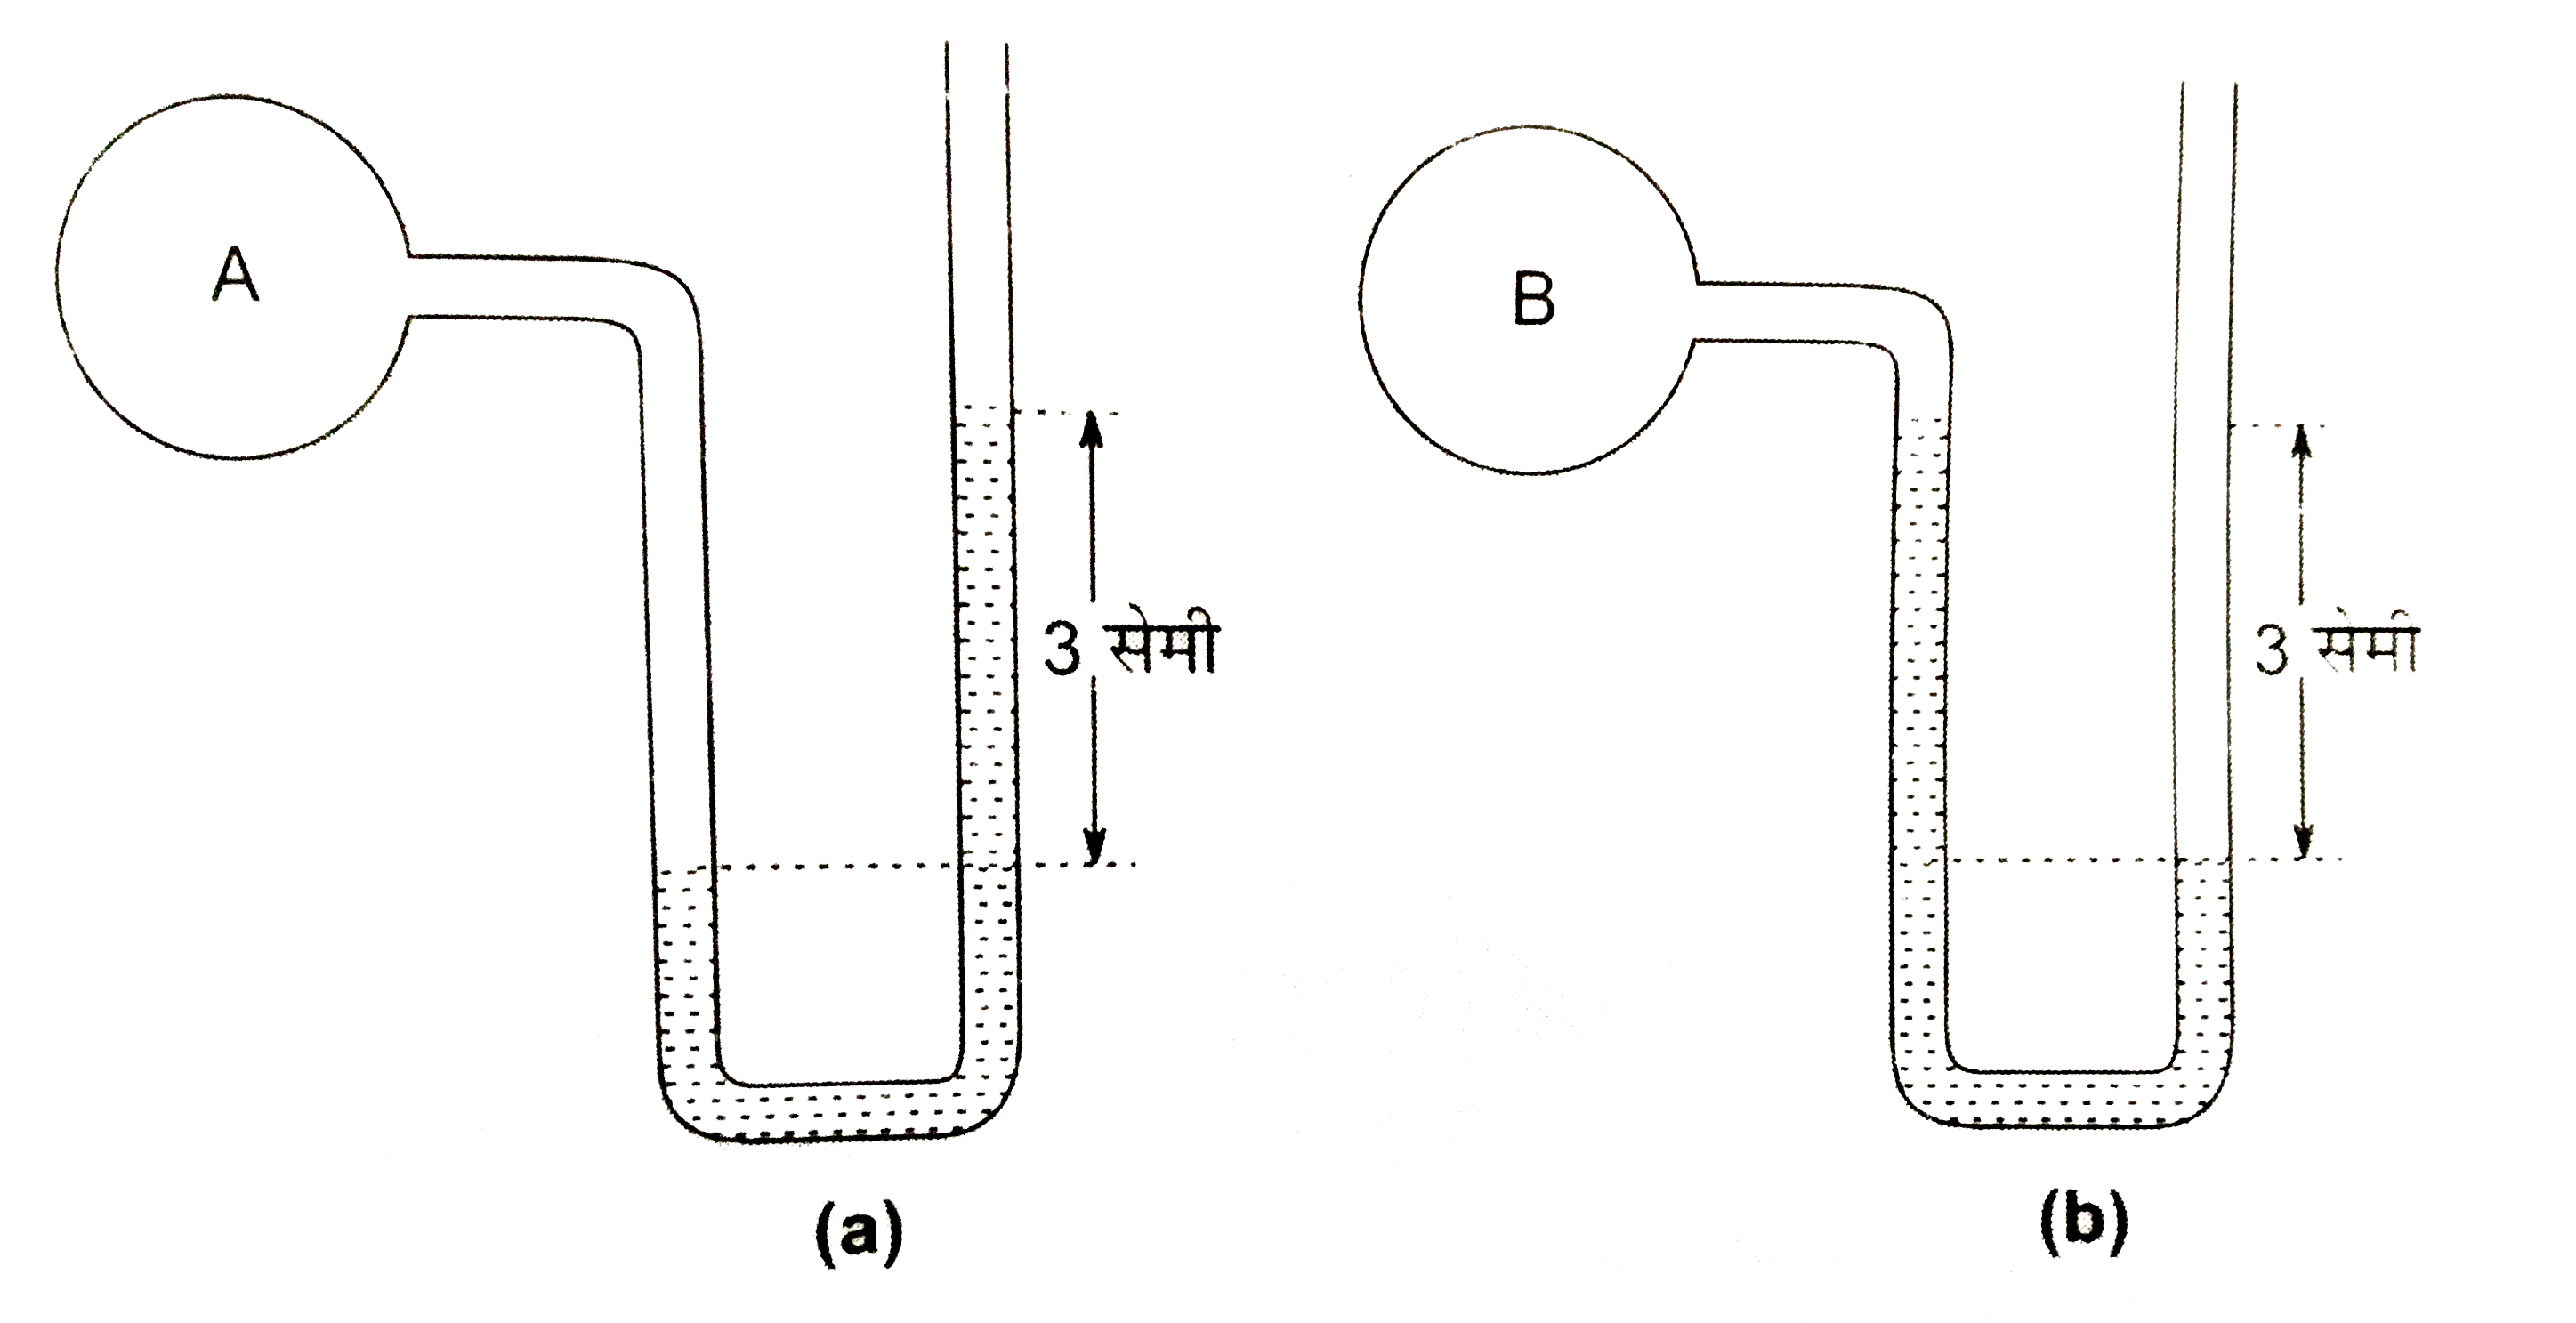 A तथा B दो बर्तनो में भरी गैसों का दाब मैनोमीटर से ज्ञात किया जाता है यन्त्र की नालियों में पारे के तलो का अंतर निम्नांकित चित्रों में दिखाया गया है चित्र (a) तथा चित्र  (b) में बर्तनो की गैस का दाब पारे की लम्बाई (मीटर) के पदों में ज्ञात कीजिये वायुमण्डल का दाब उस समय 75 सेमी पारे के बराबर था